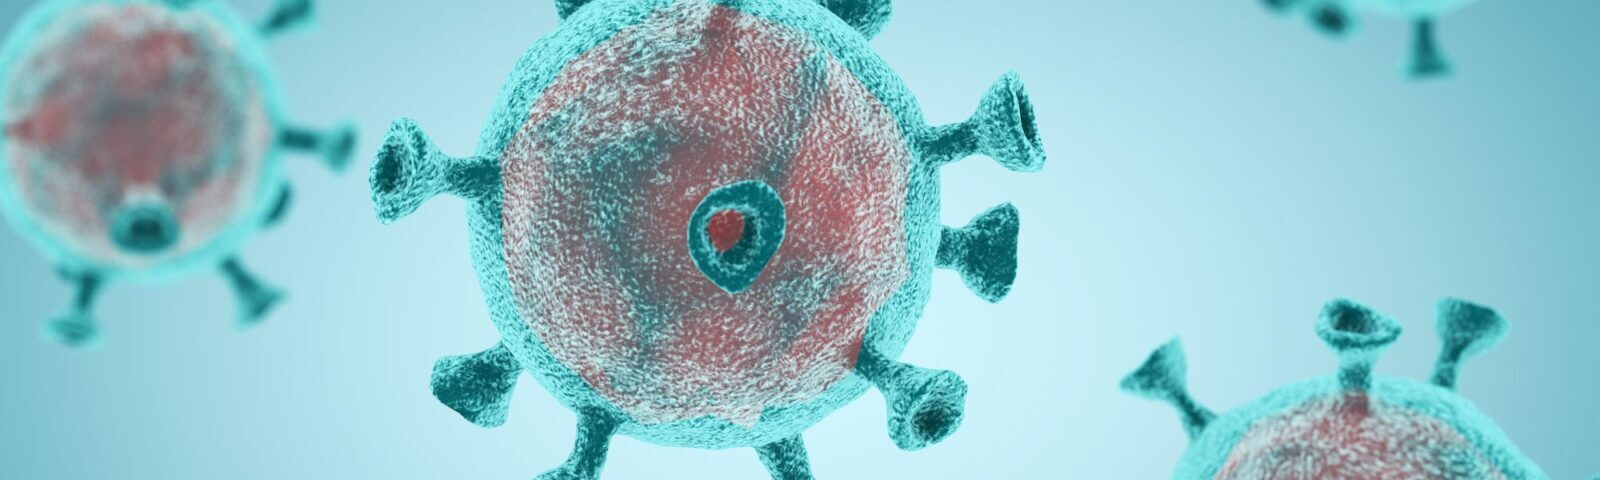 Как развивается ситуация с коронавирусом?